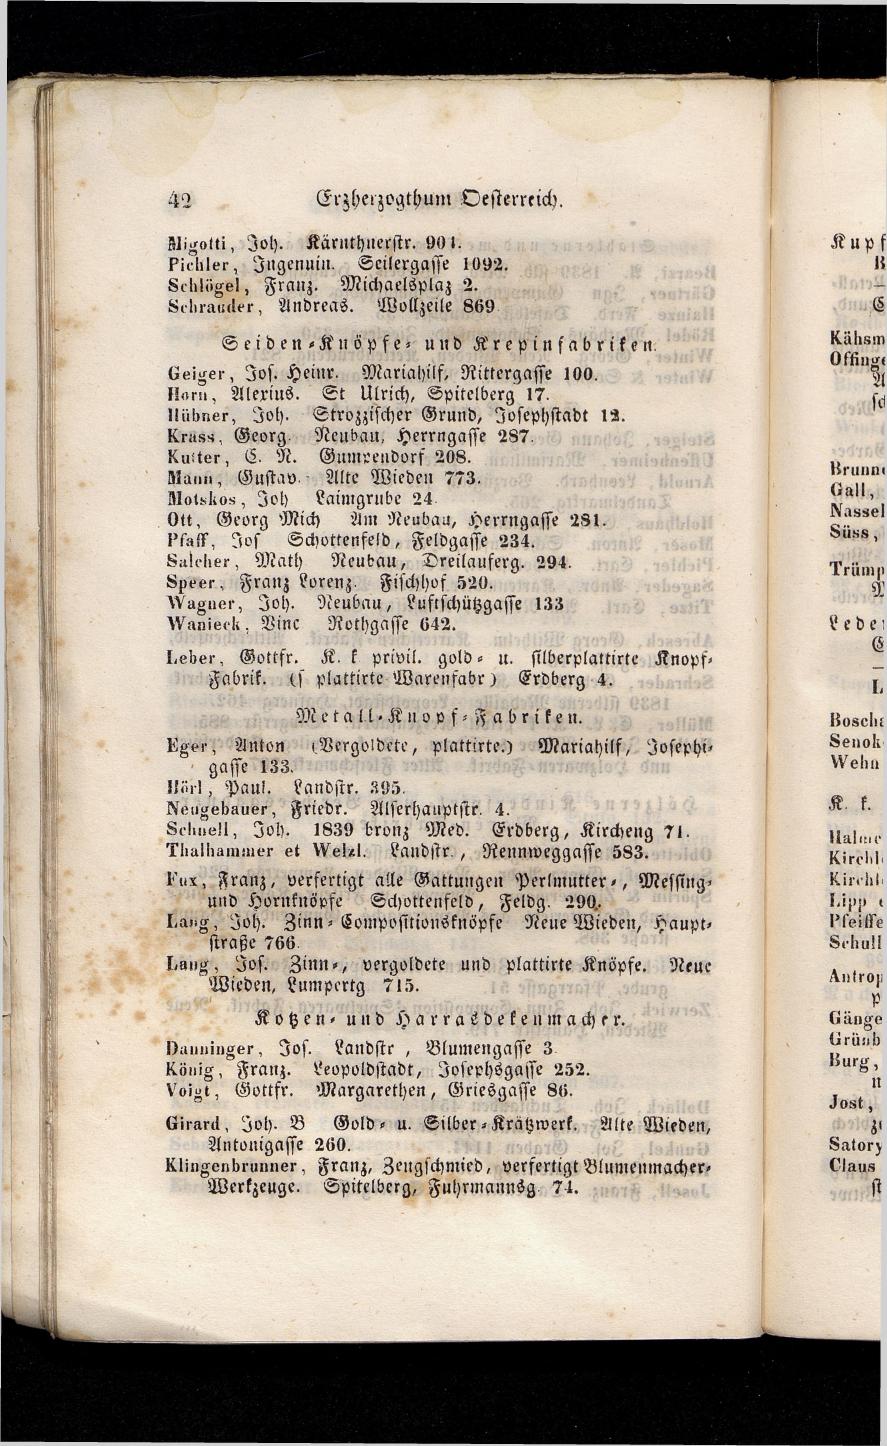 Grosses Adressbuch der Kaufleute. No. 13. Oesterreich ober u. unter der Enns 1844 - Seite 46